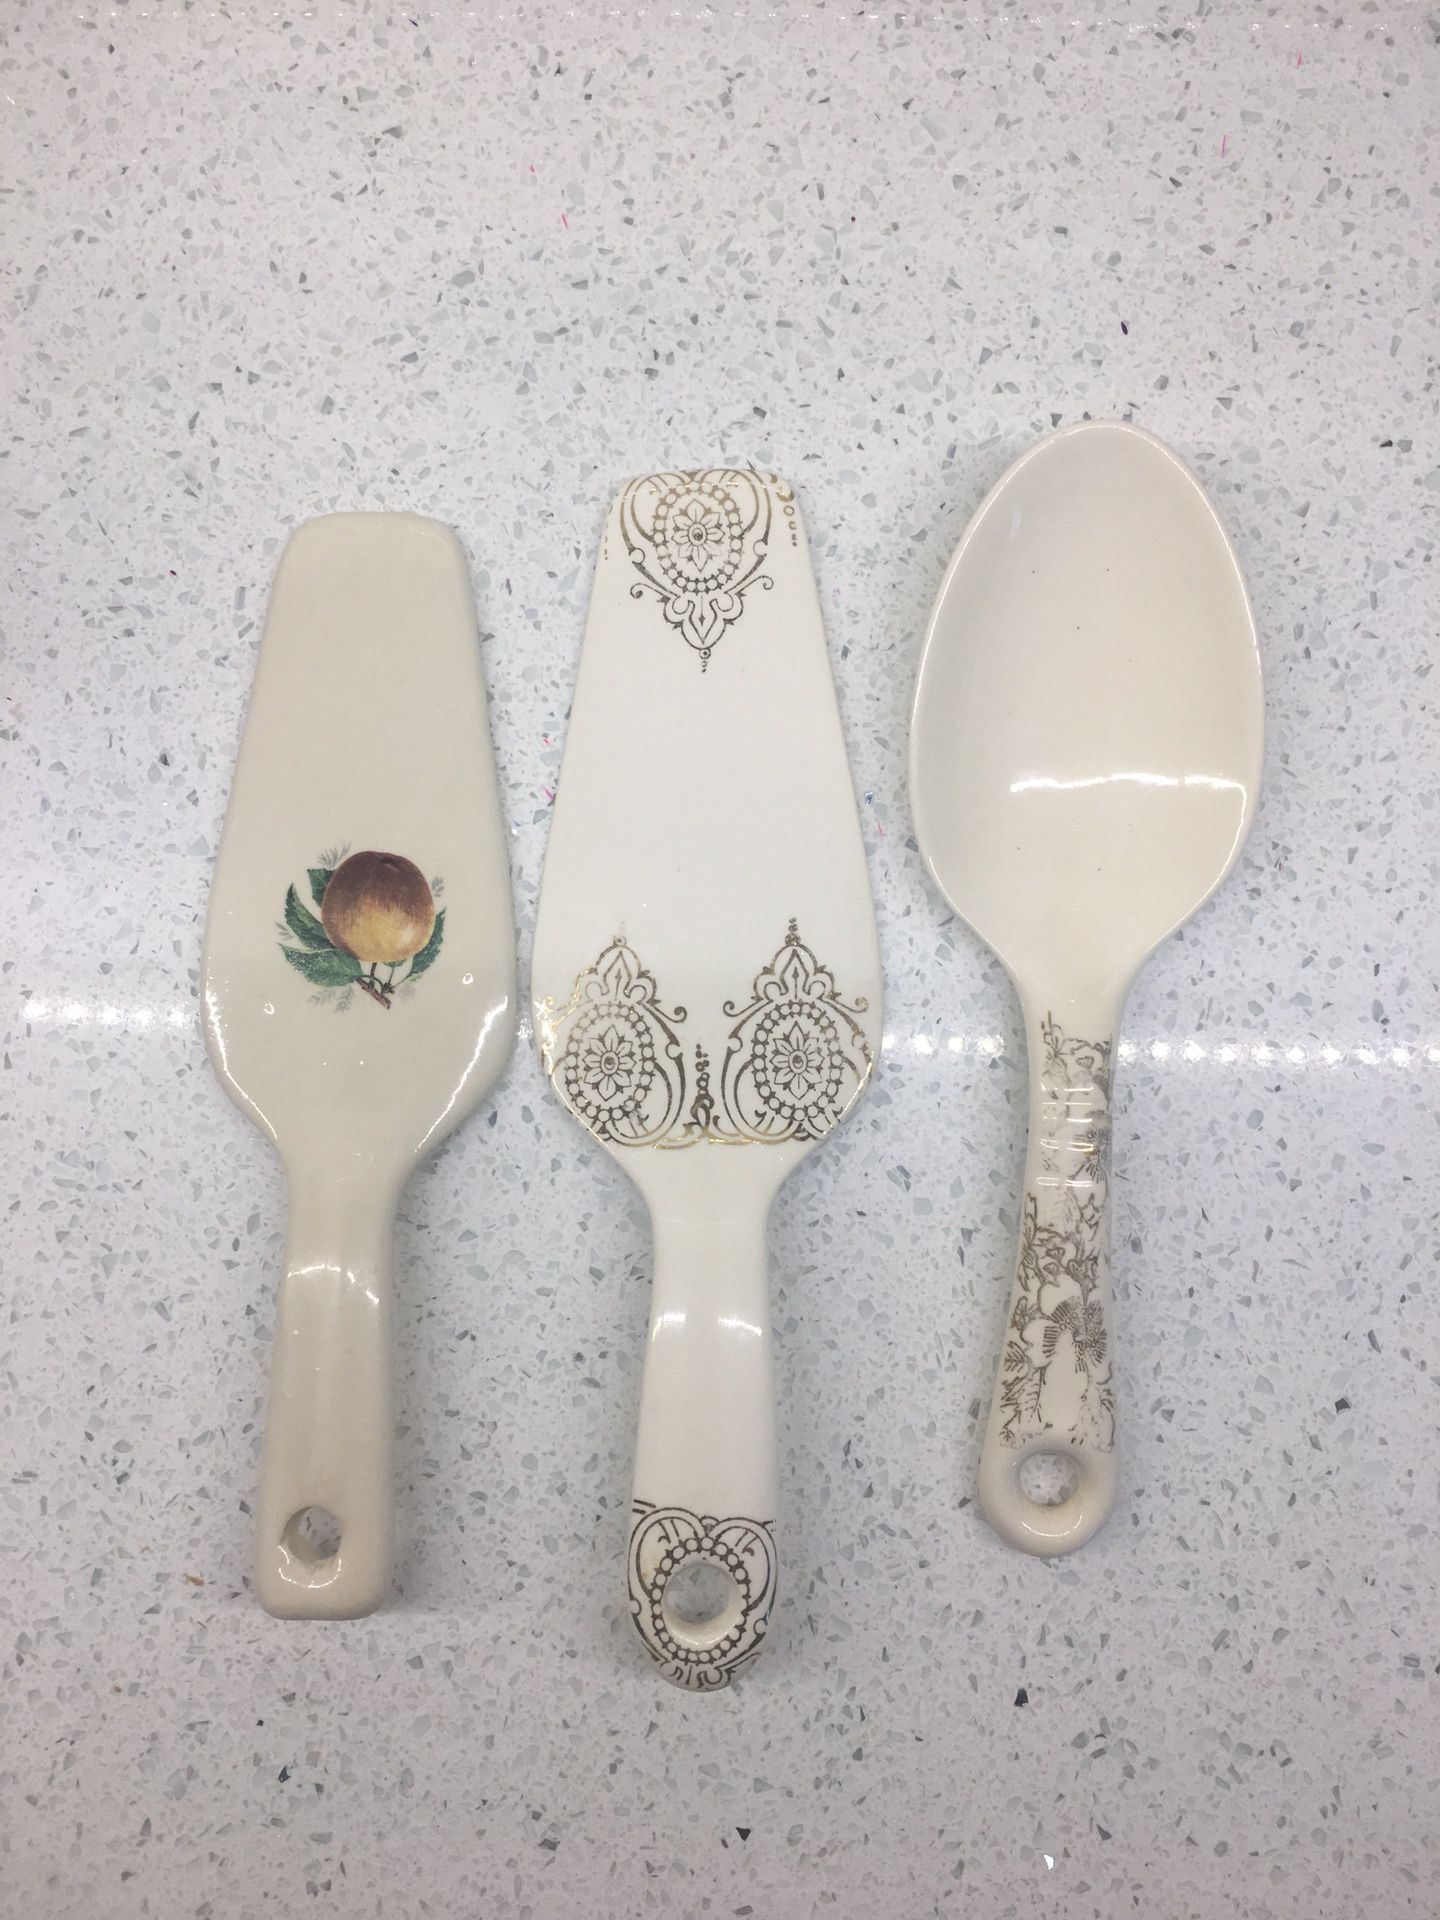 Porcelain/ceramic serving spoon & spatulas antique